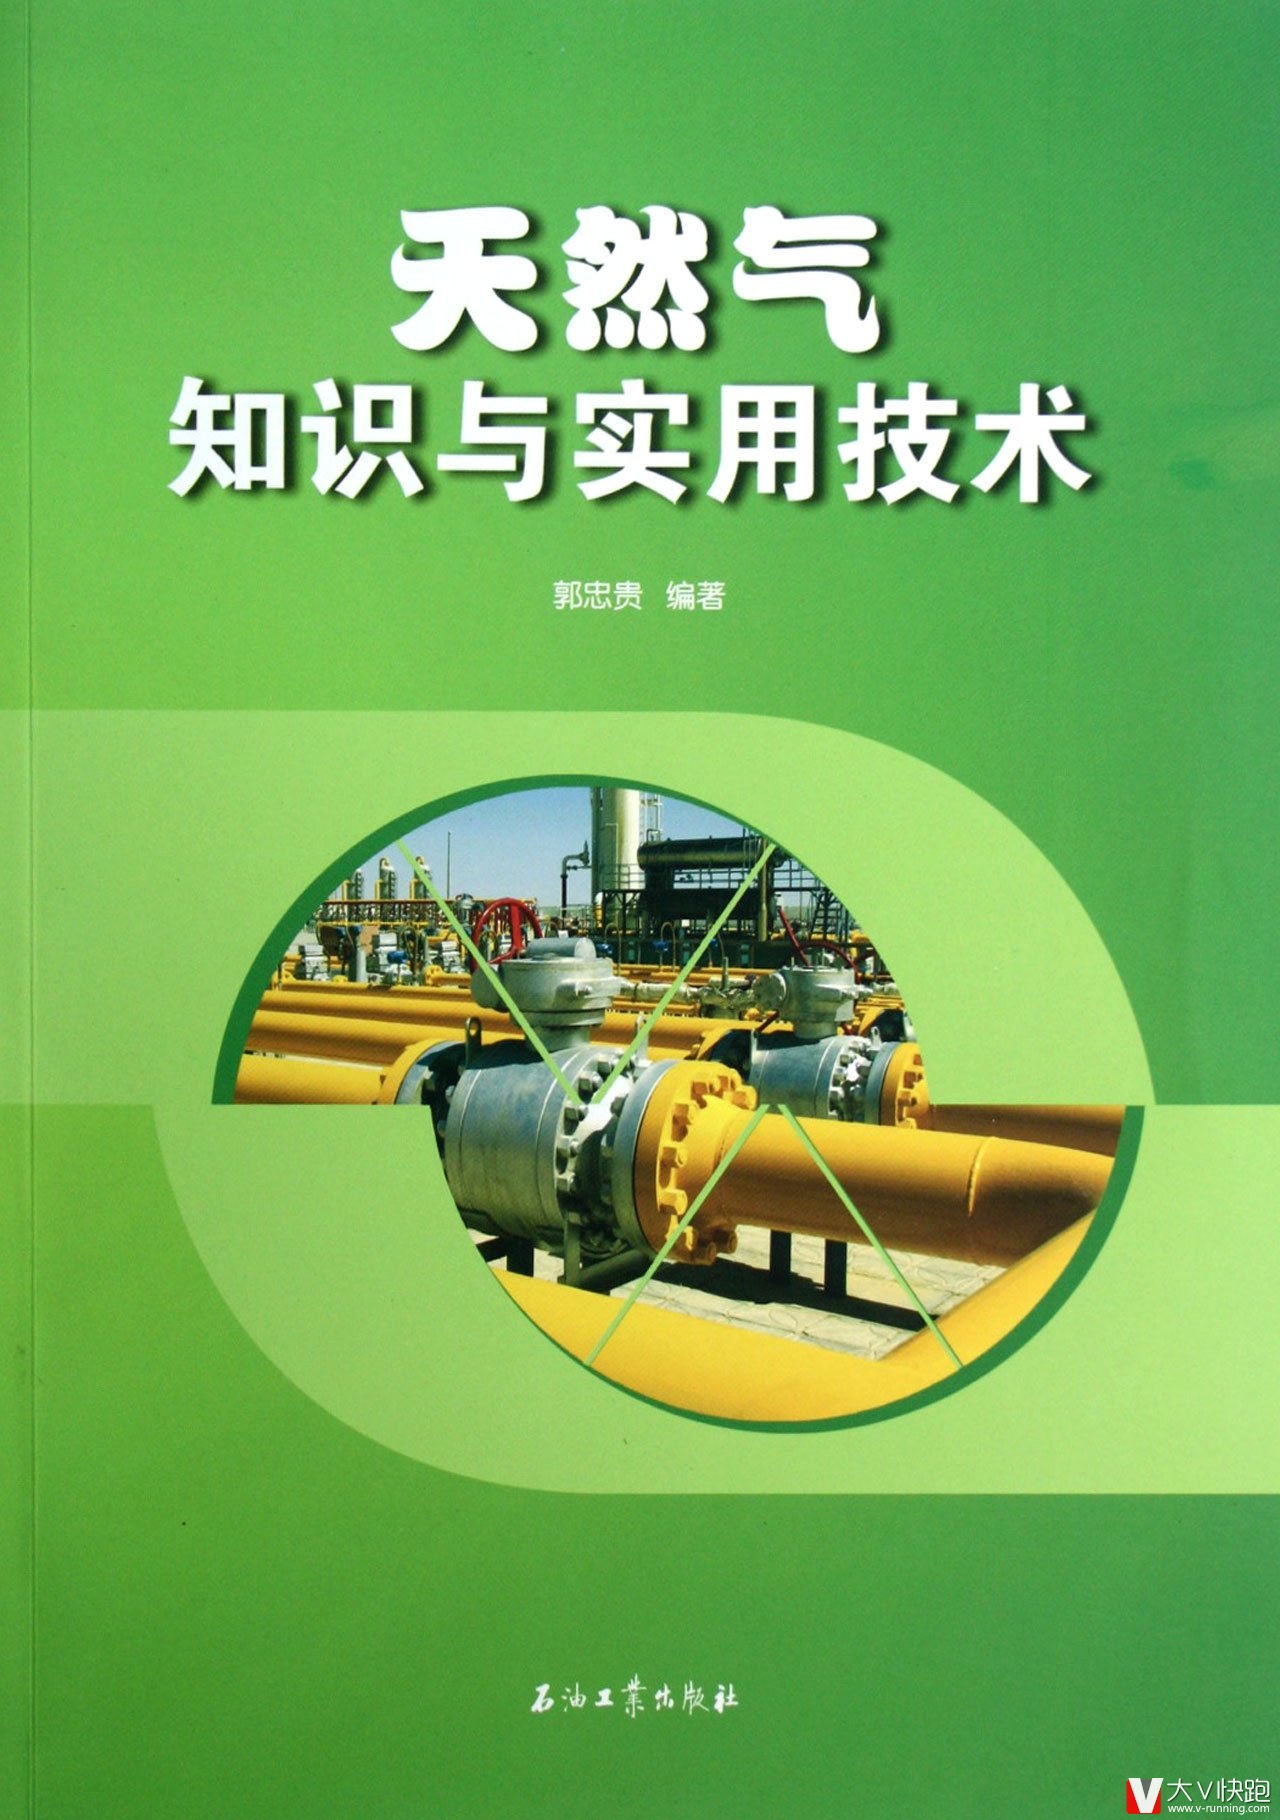 天然气知识与实用技术郭忠贵(作者)现货石油工业出版社9787502191887